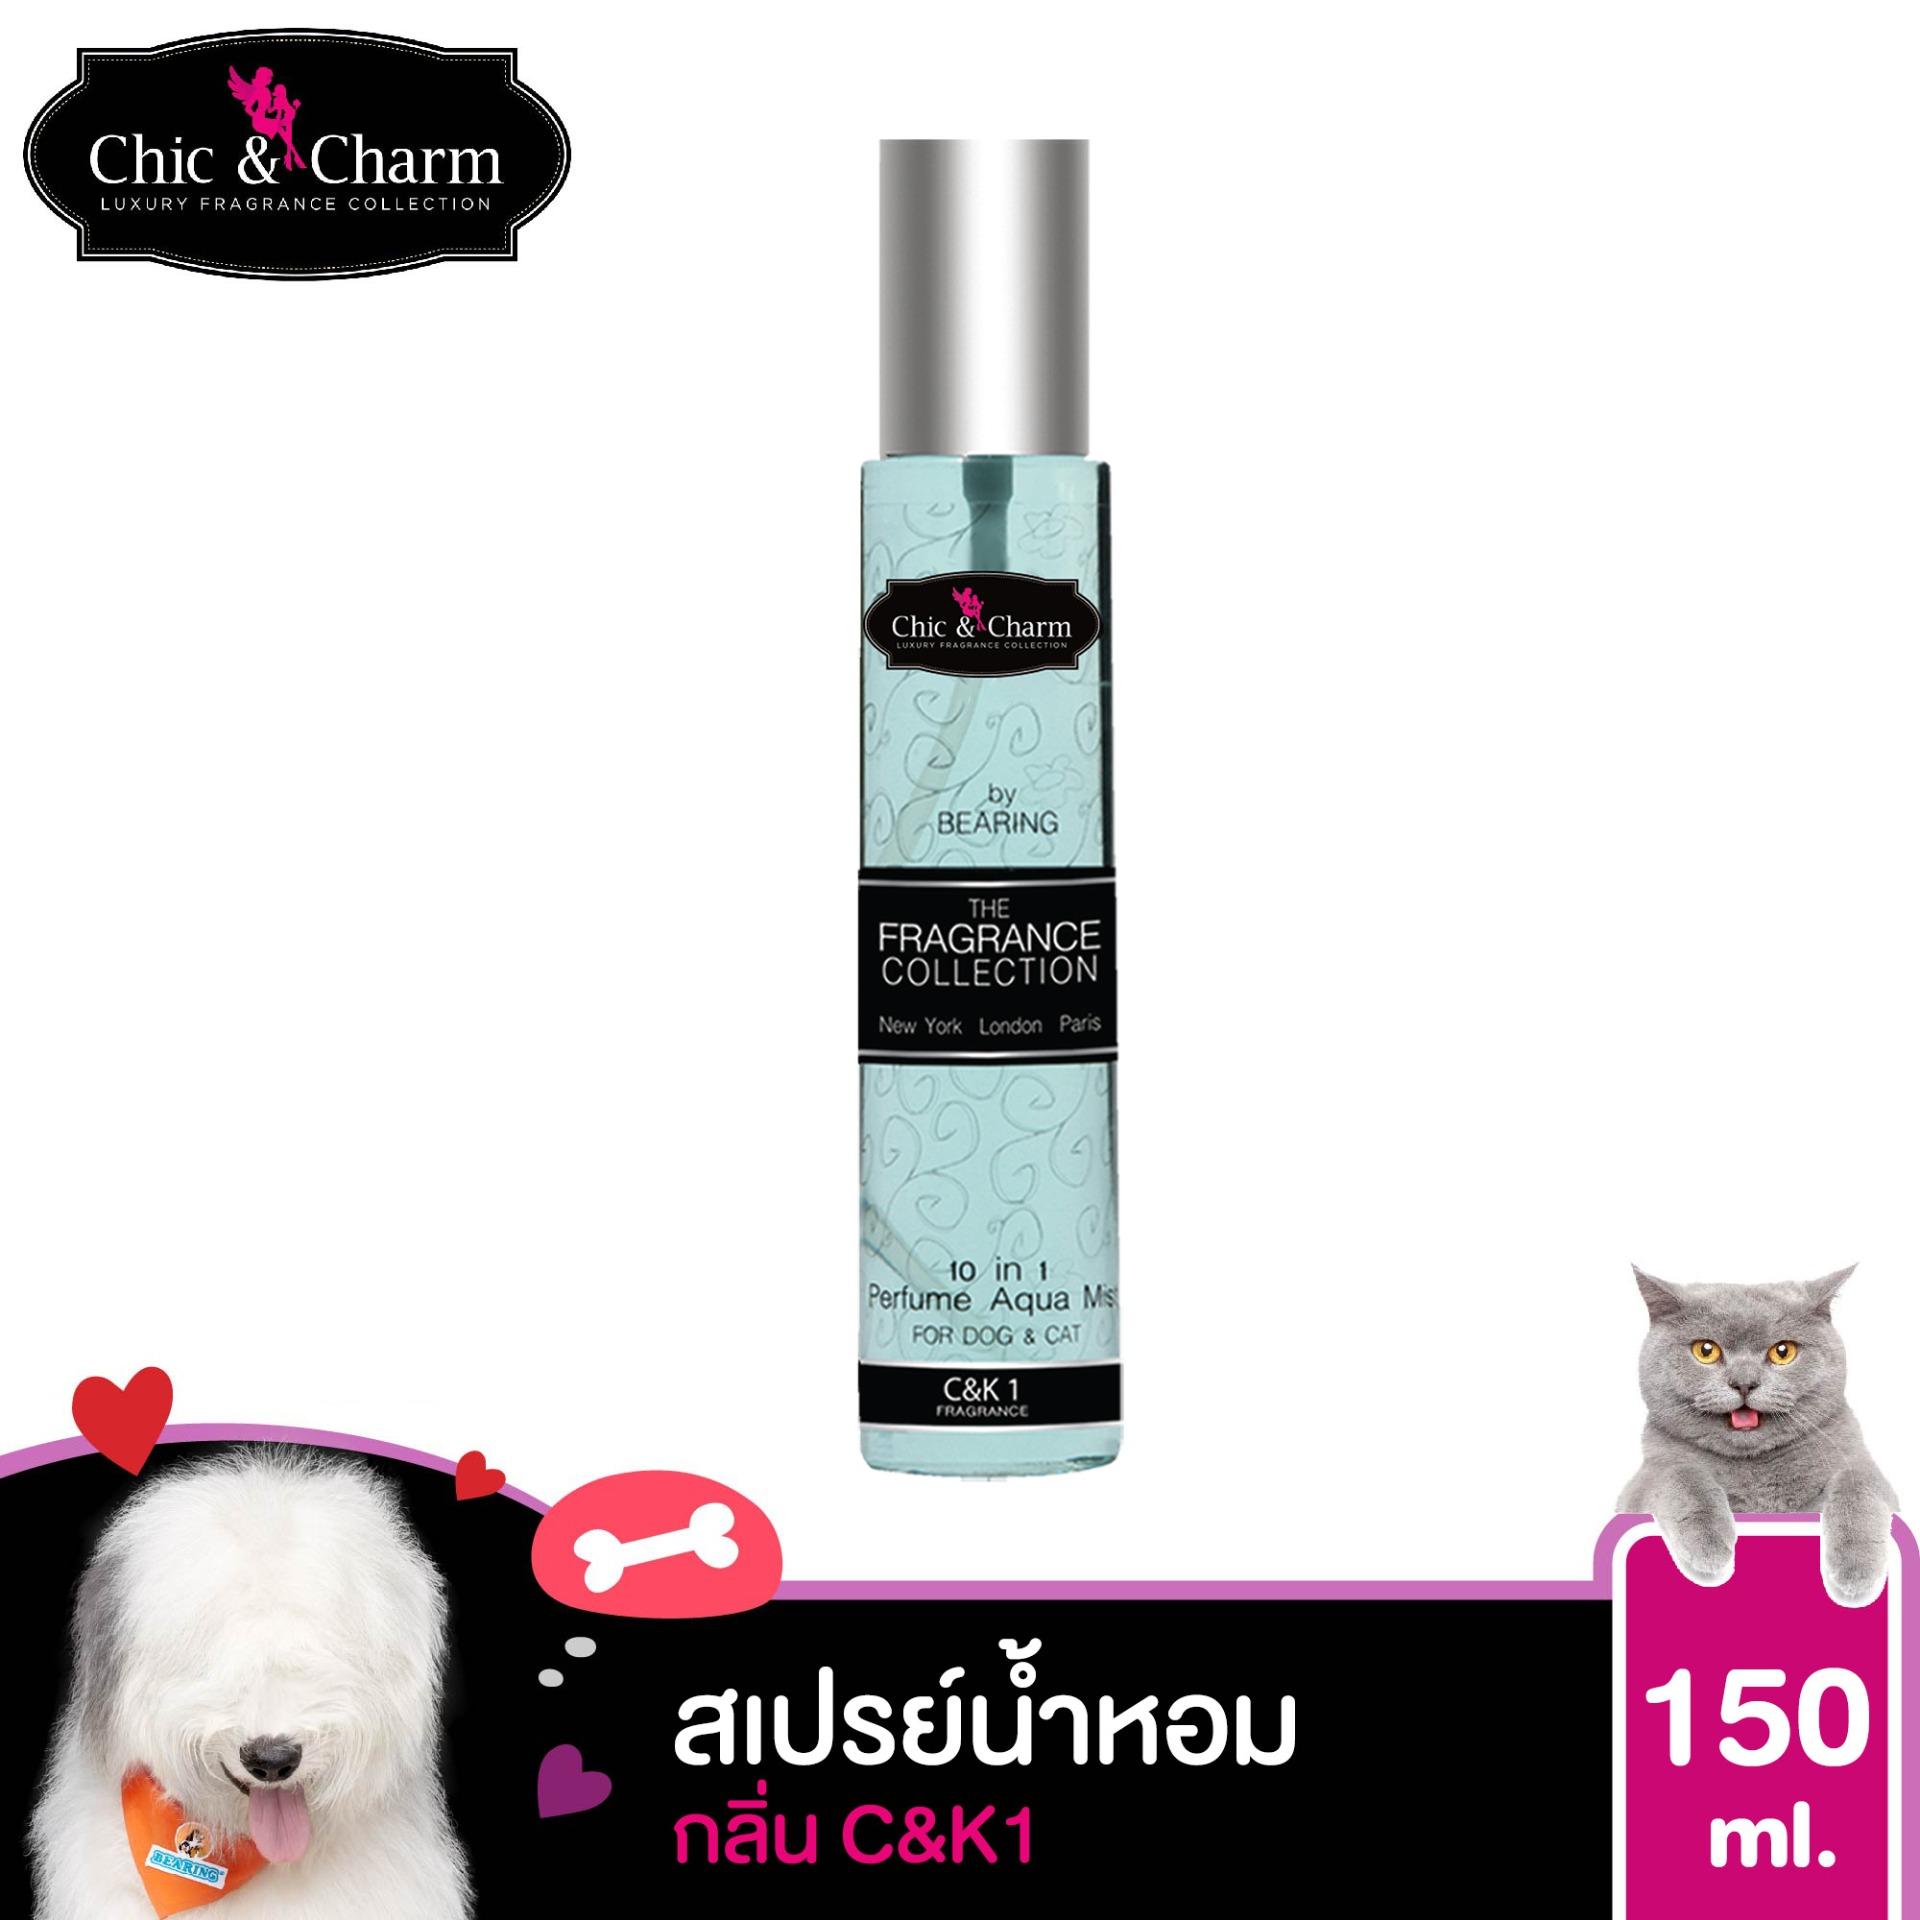 น้ำหอมสุนัข น้ำหอมดับกลิ่น สูตรอ่อนโยนโคโลญจน์ ติดทนนาน ขนไม่พันกัน Chic & Charm Perfume Aqua Mist 150 ml.กลิ่น C&K1